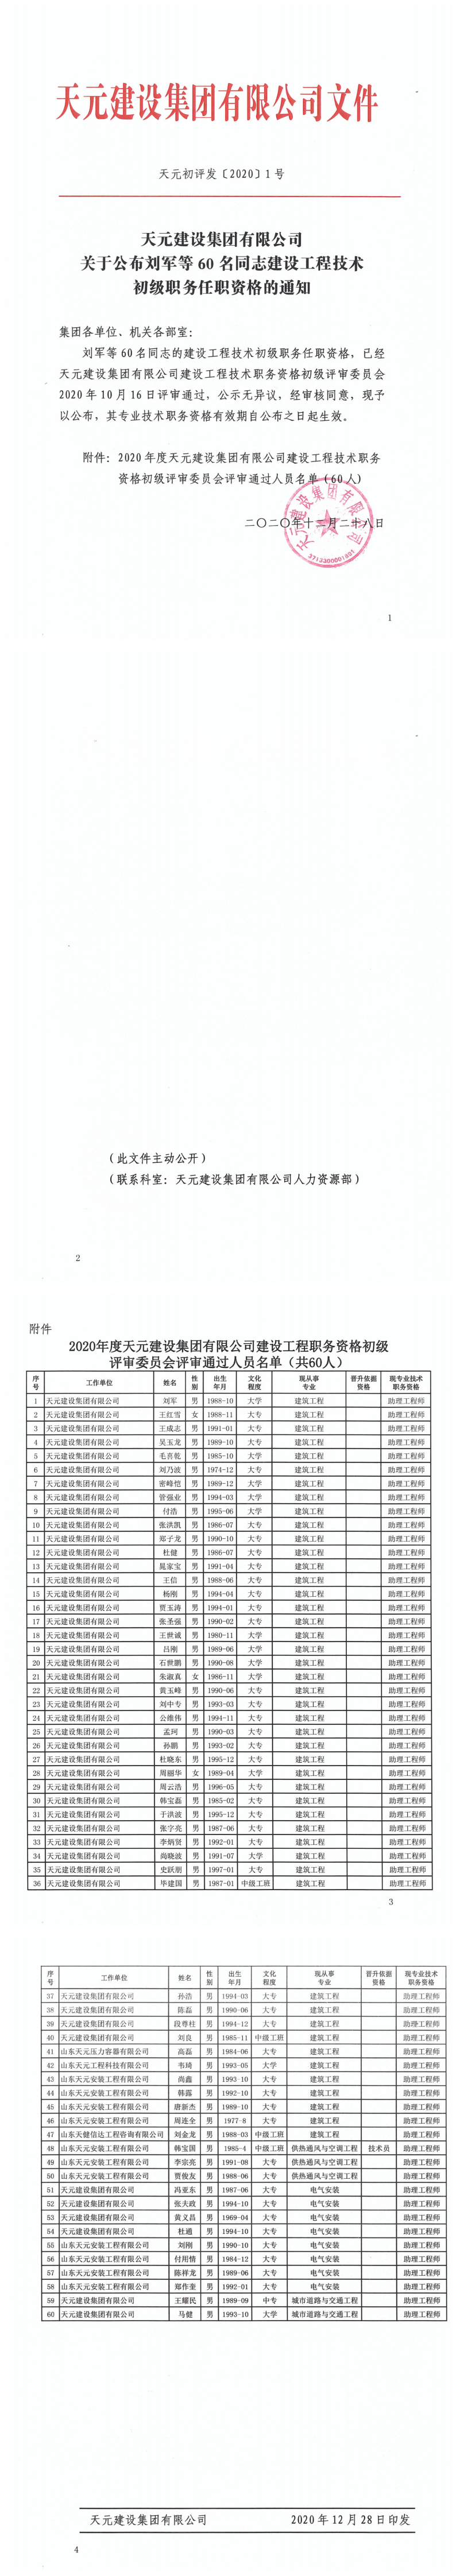 关于公布刘军等60名同志建设工程技术初级职务任职资格的通知(图1)